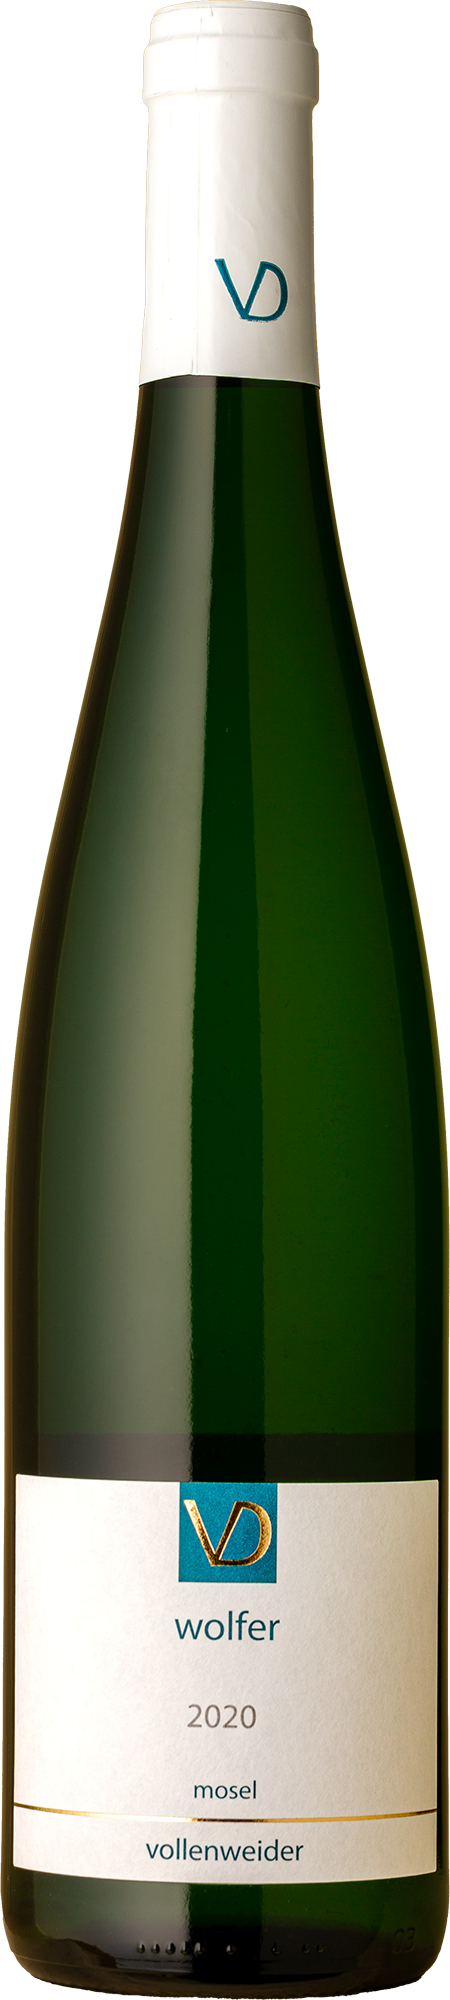 Vollenweider - Wolfer Riesling 2020 White Wine